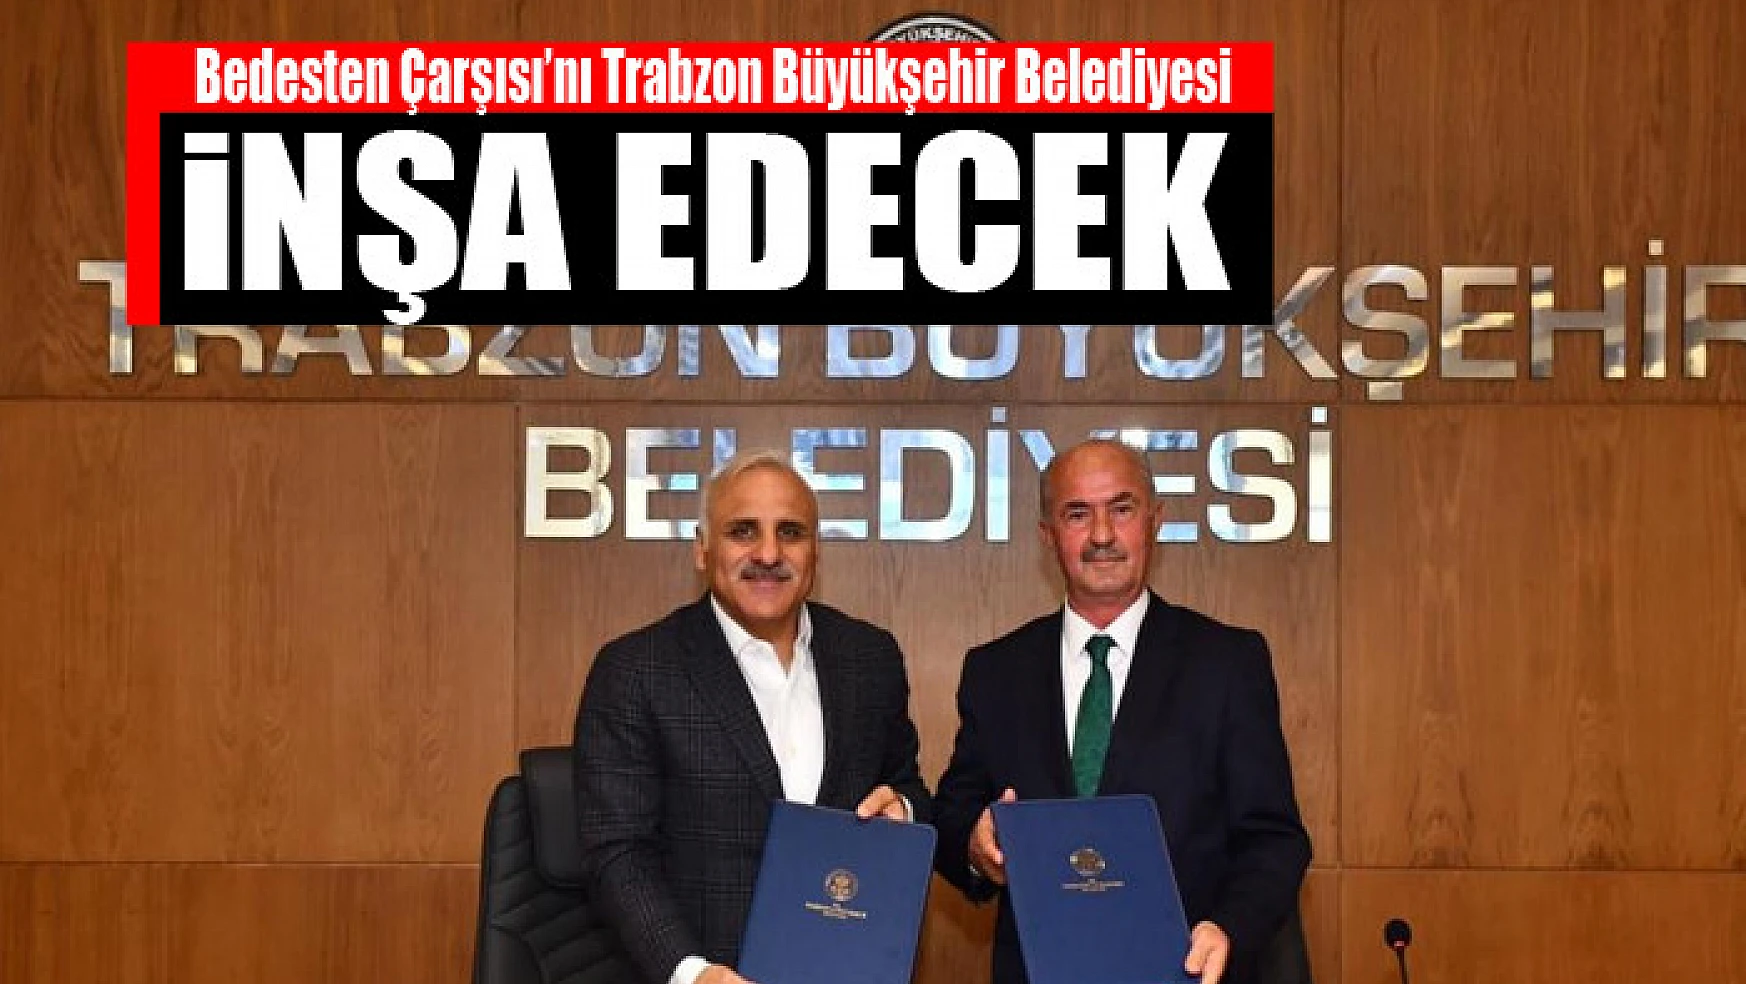 Bedesten Çarşısı'nı Trabzon Büyükşehir Belediyesi inşa edecek